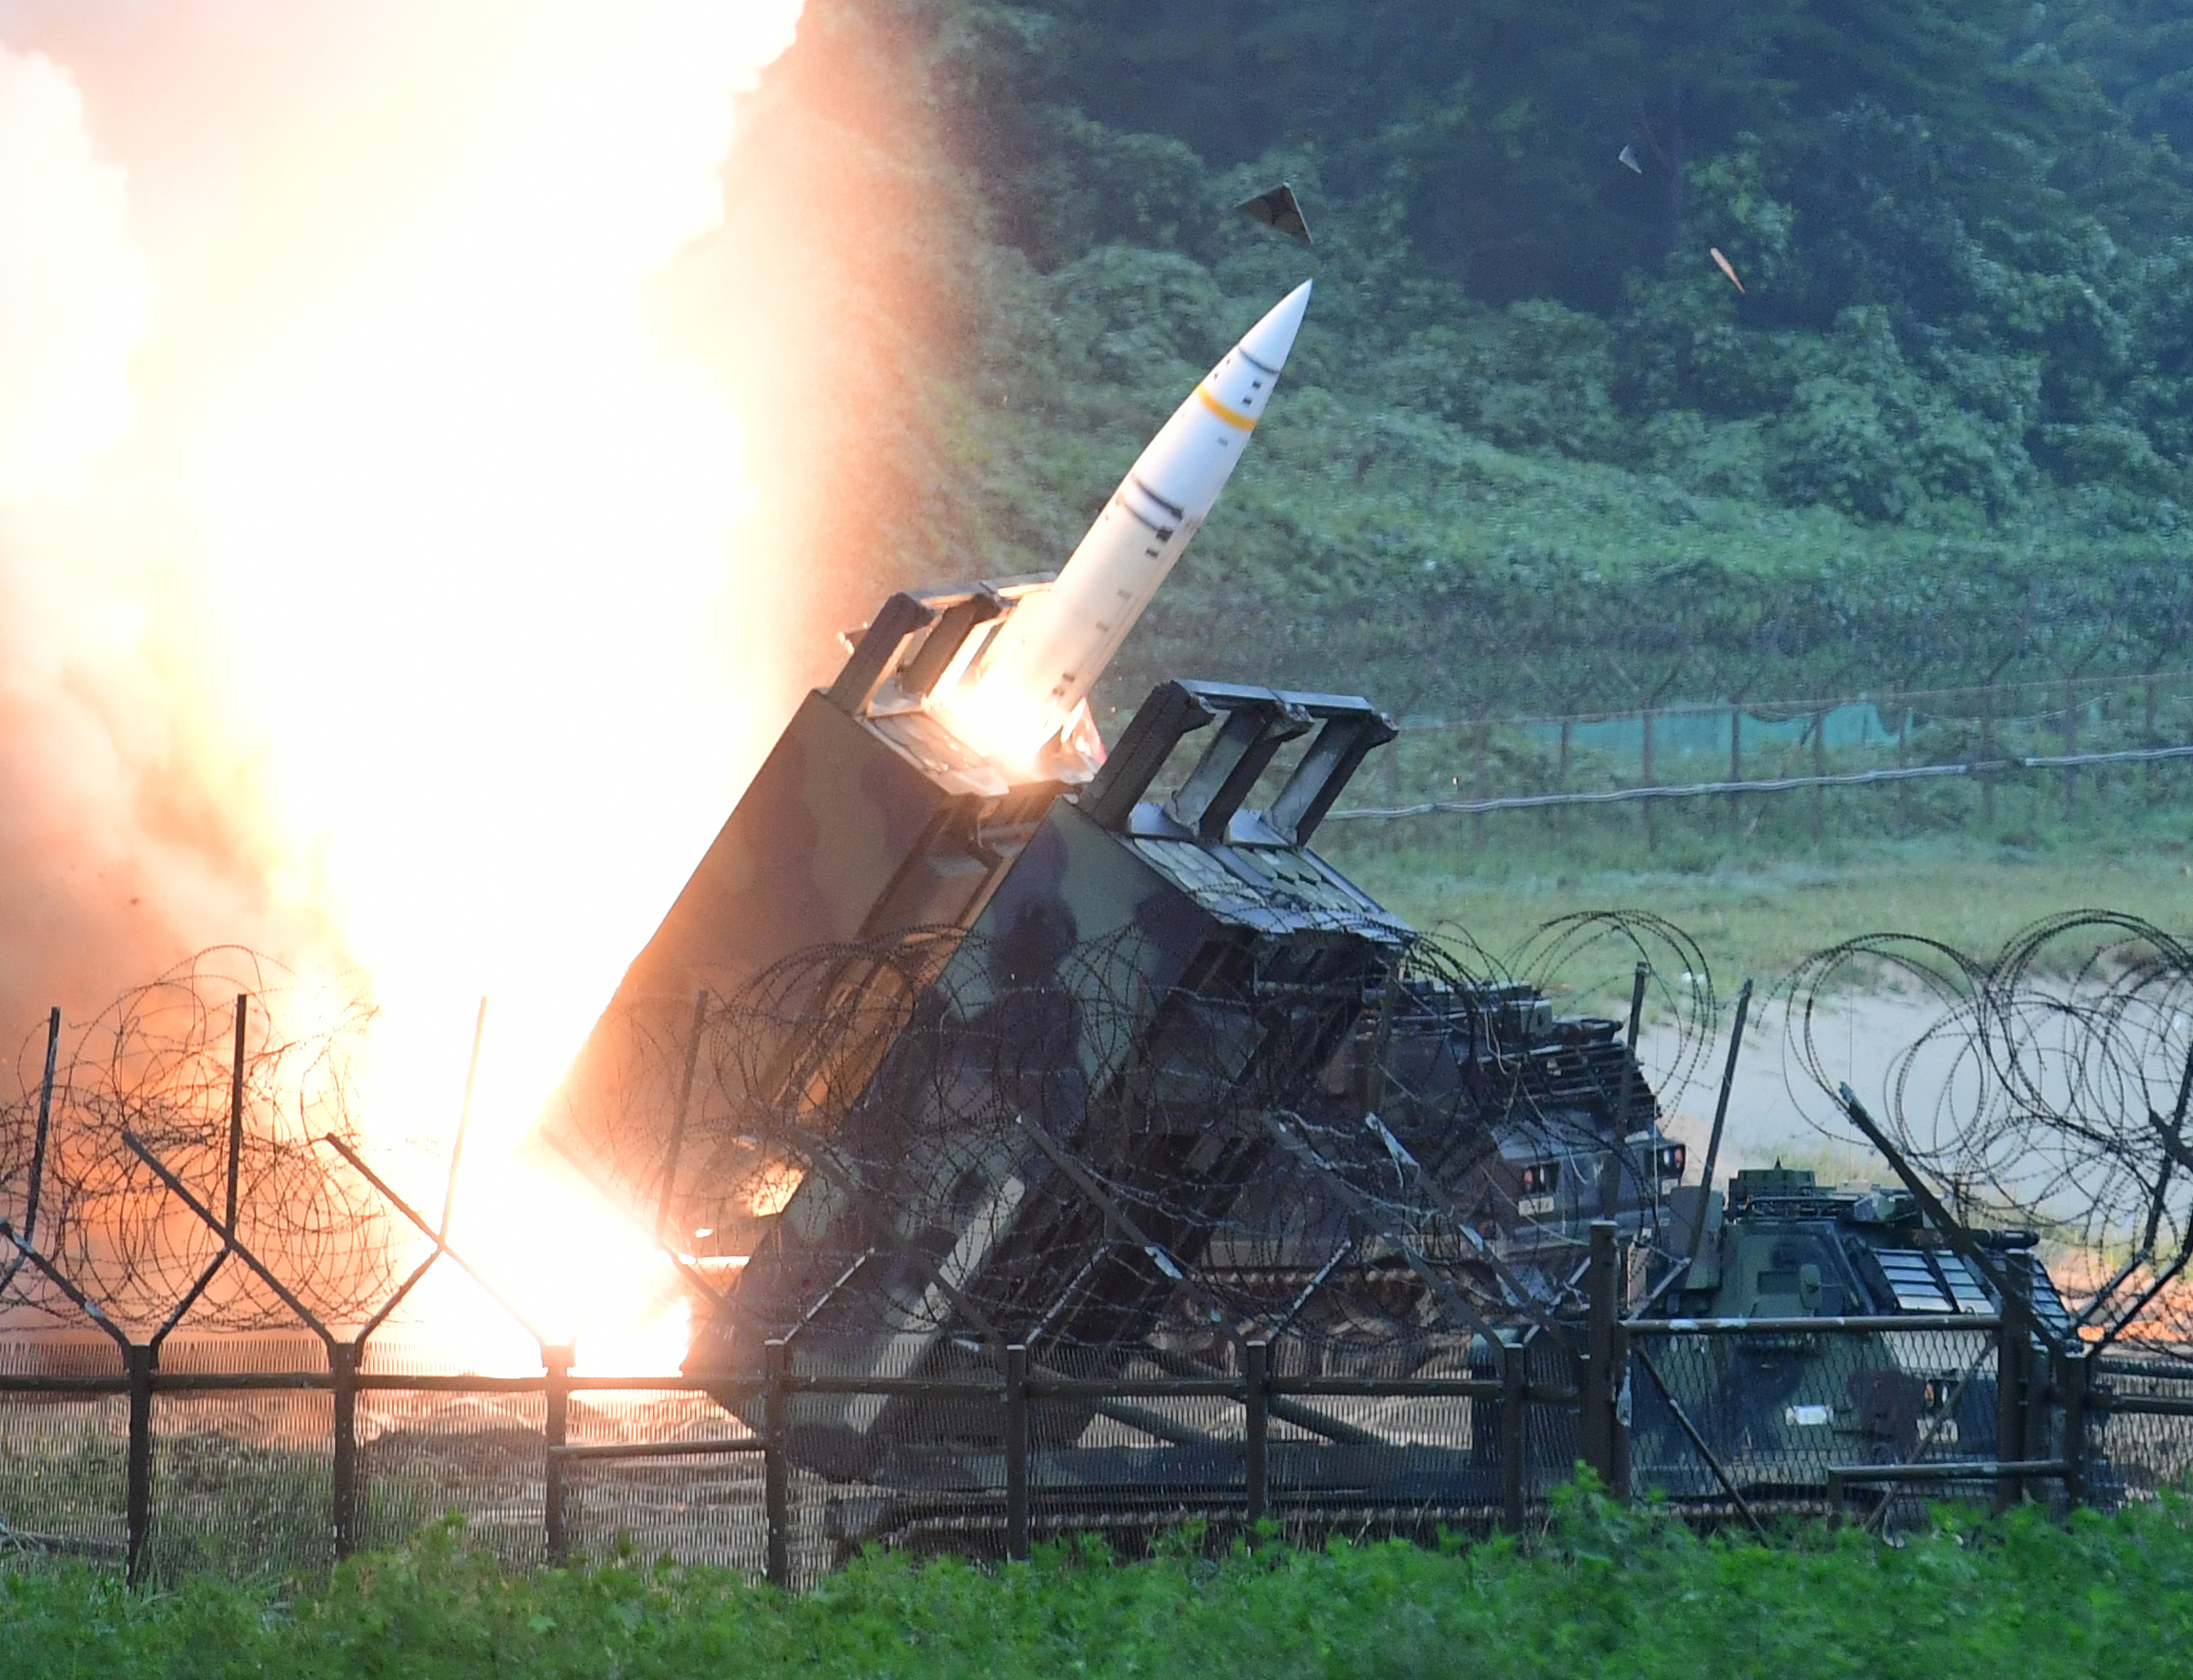 Die von den USA gelieferten ATACMS-Raketen haben eine Reichweite von bis zu 165 Kilometern, könnten die militärischen Möglichkeiten der Ukraine deutlich verbessern.